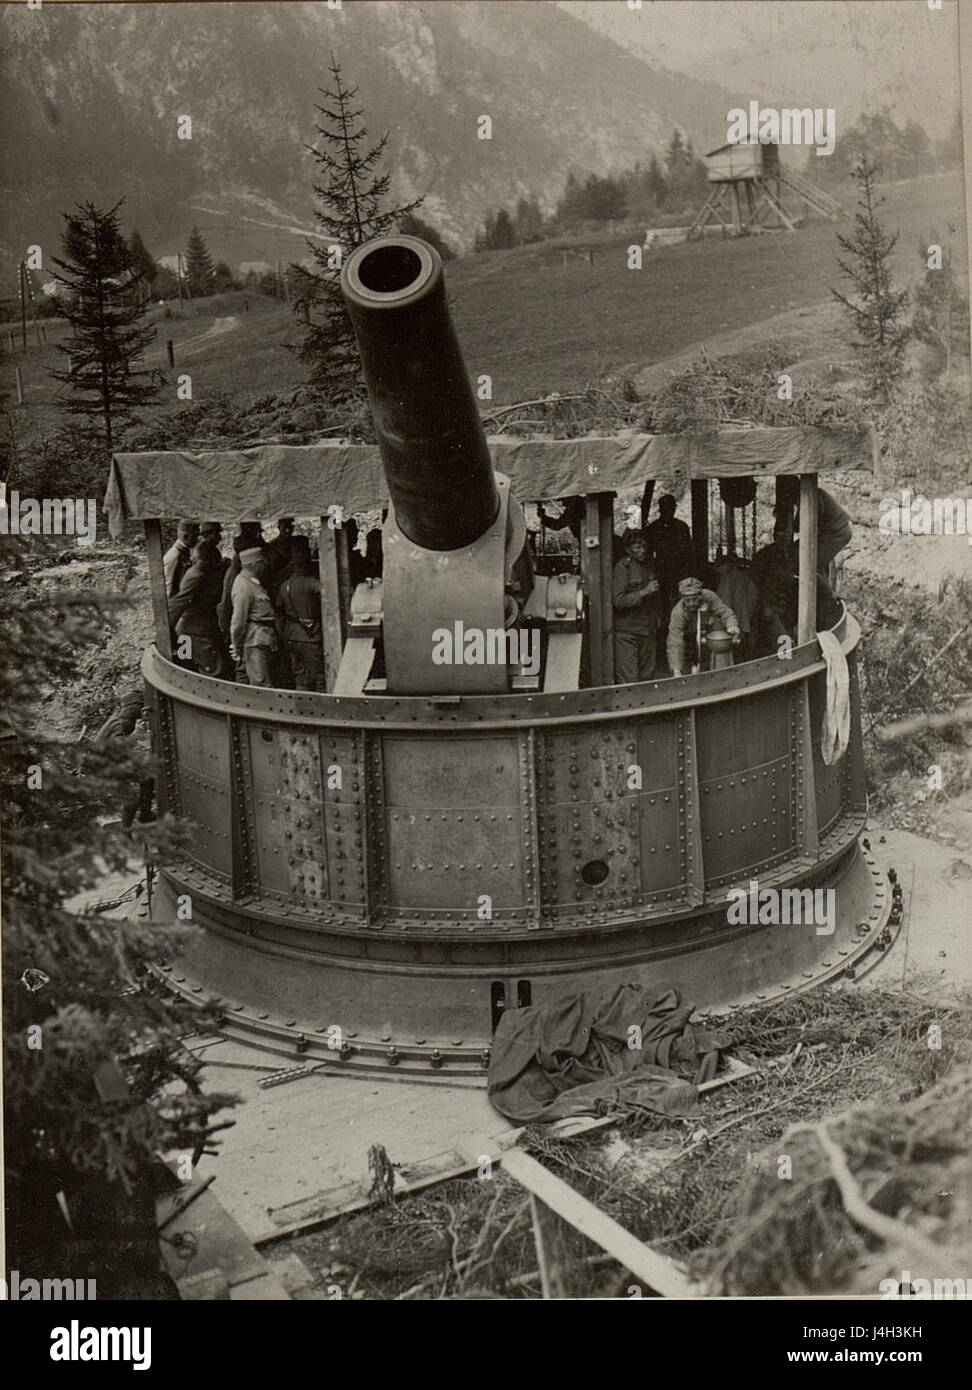 Stellung einer 42cm Haubitze. Besichtigung des K.H.L.15 durch den Armee Kommandanten im Kanaltal bei Cucco, Slowenien Stock Photo